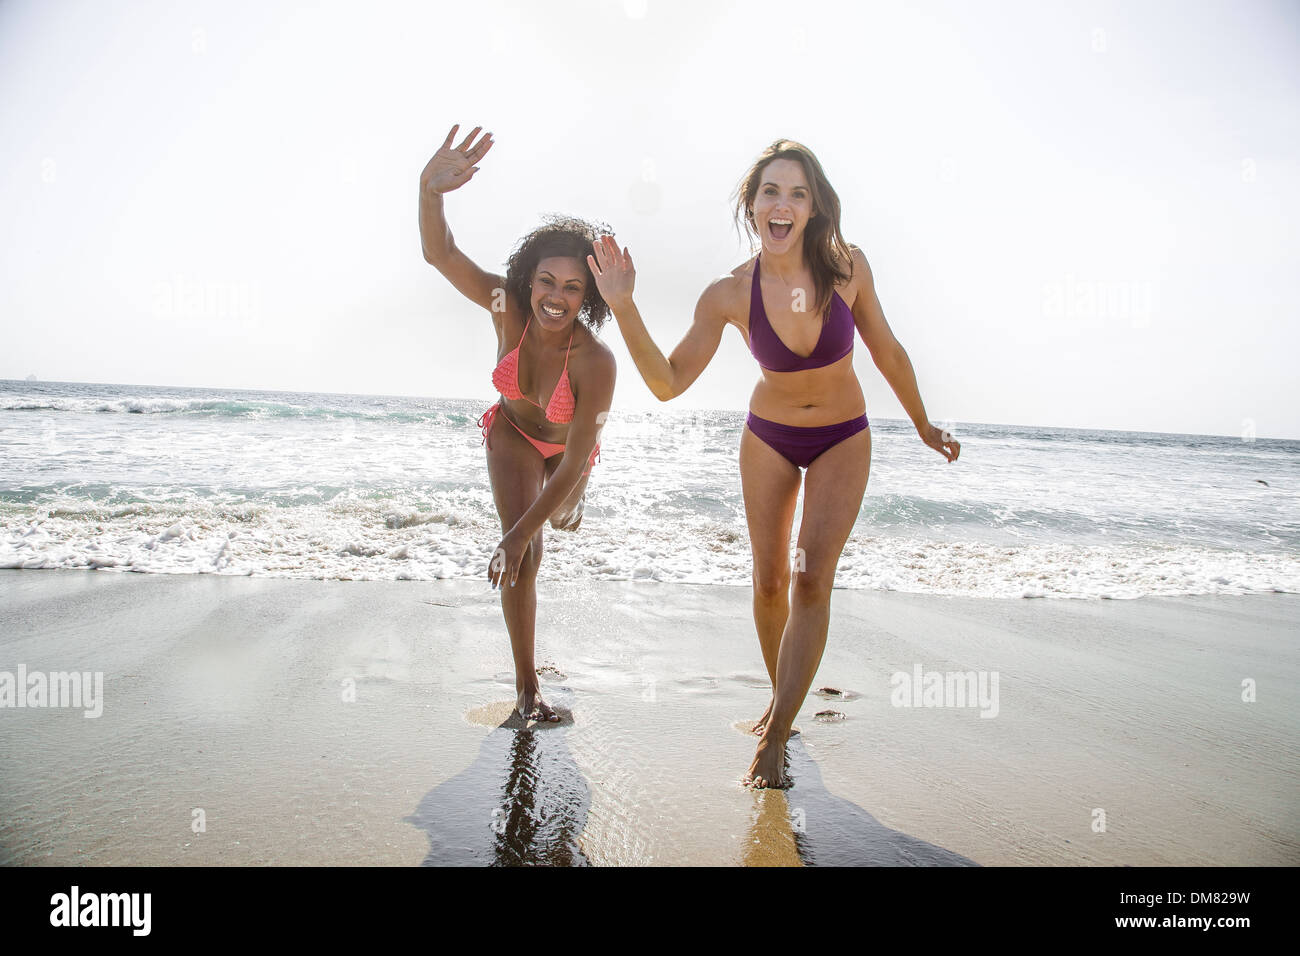 Young women in bikinis waving Stock Photo